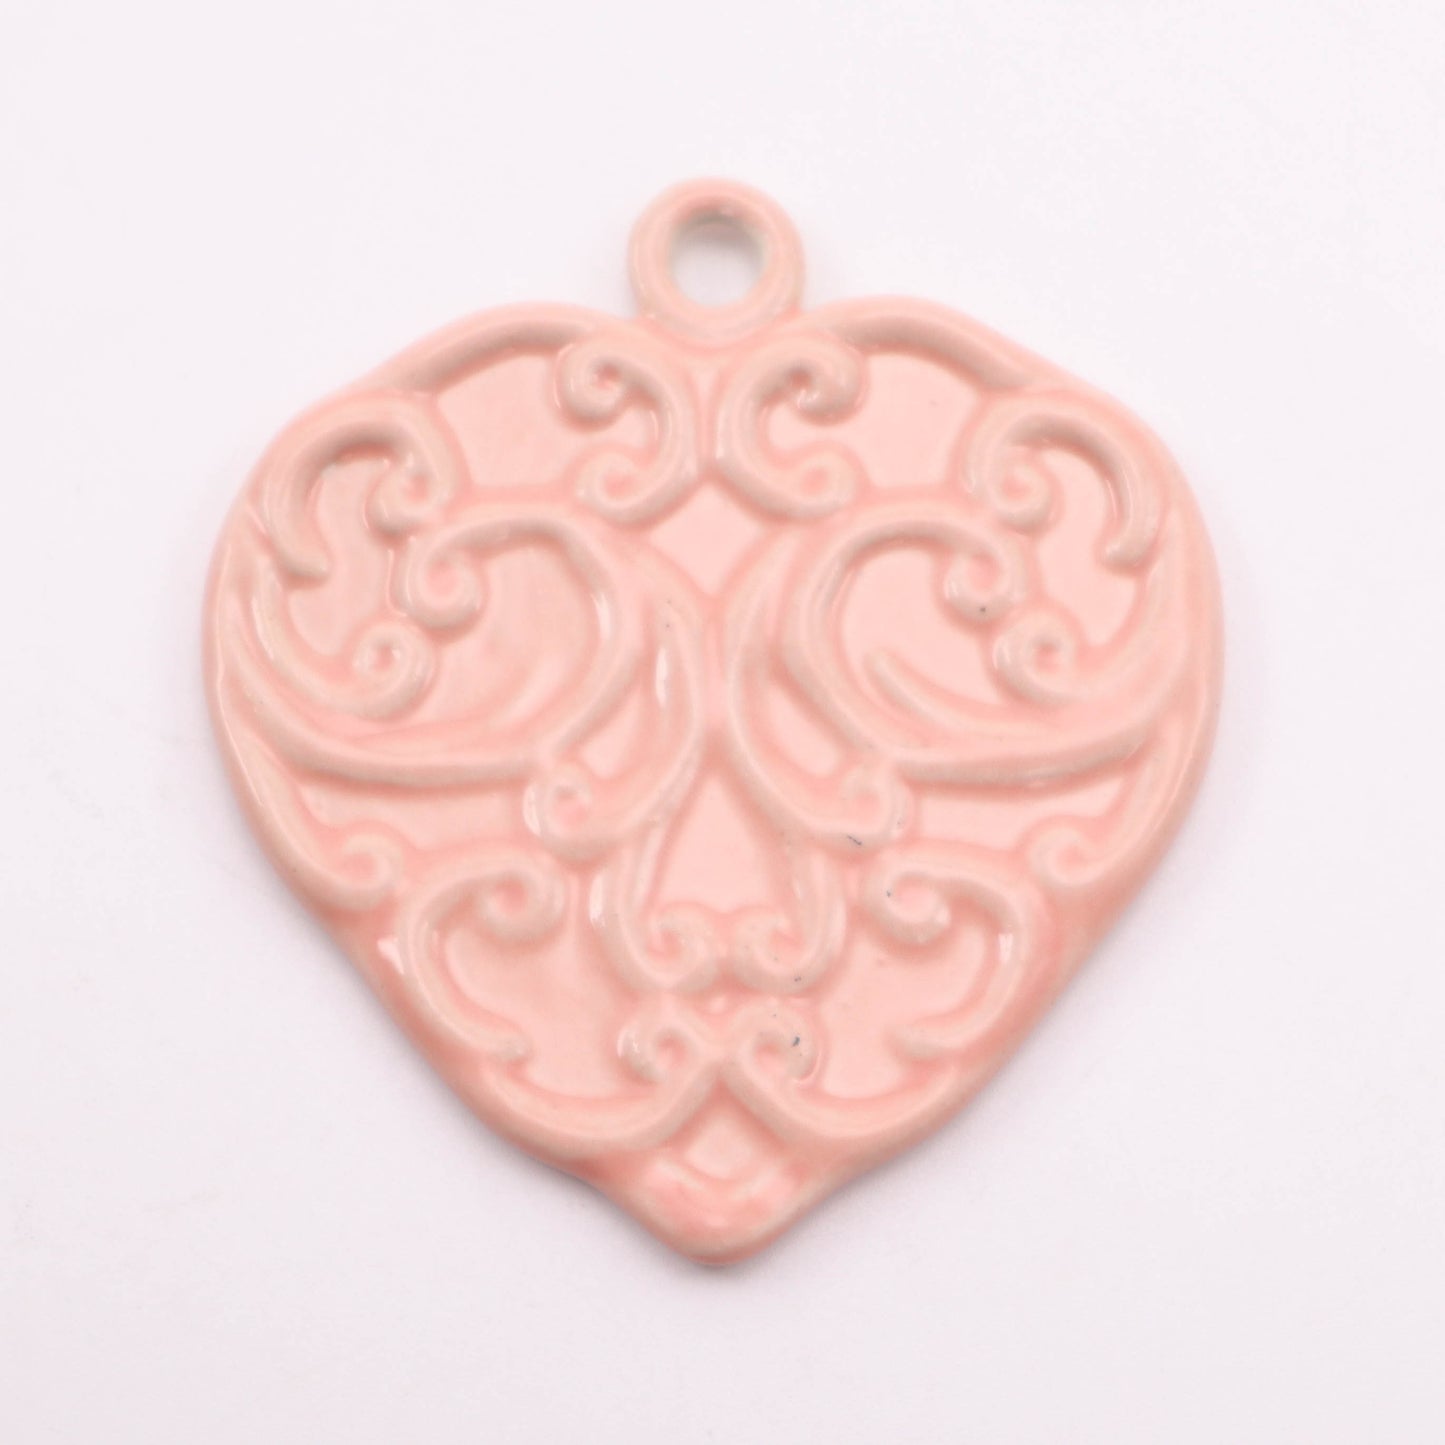 2"x2" Heart Ornament. Pattern: Pink